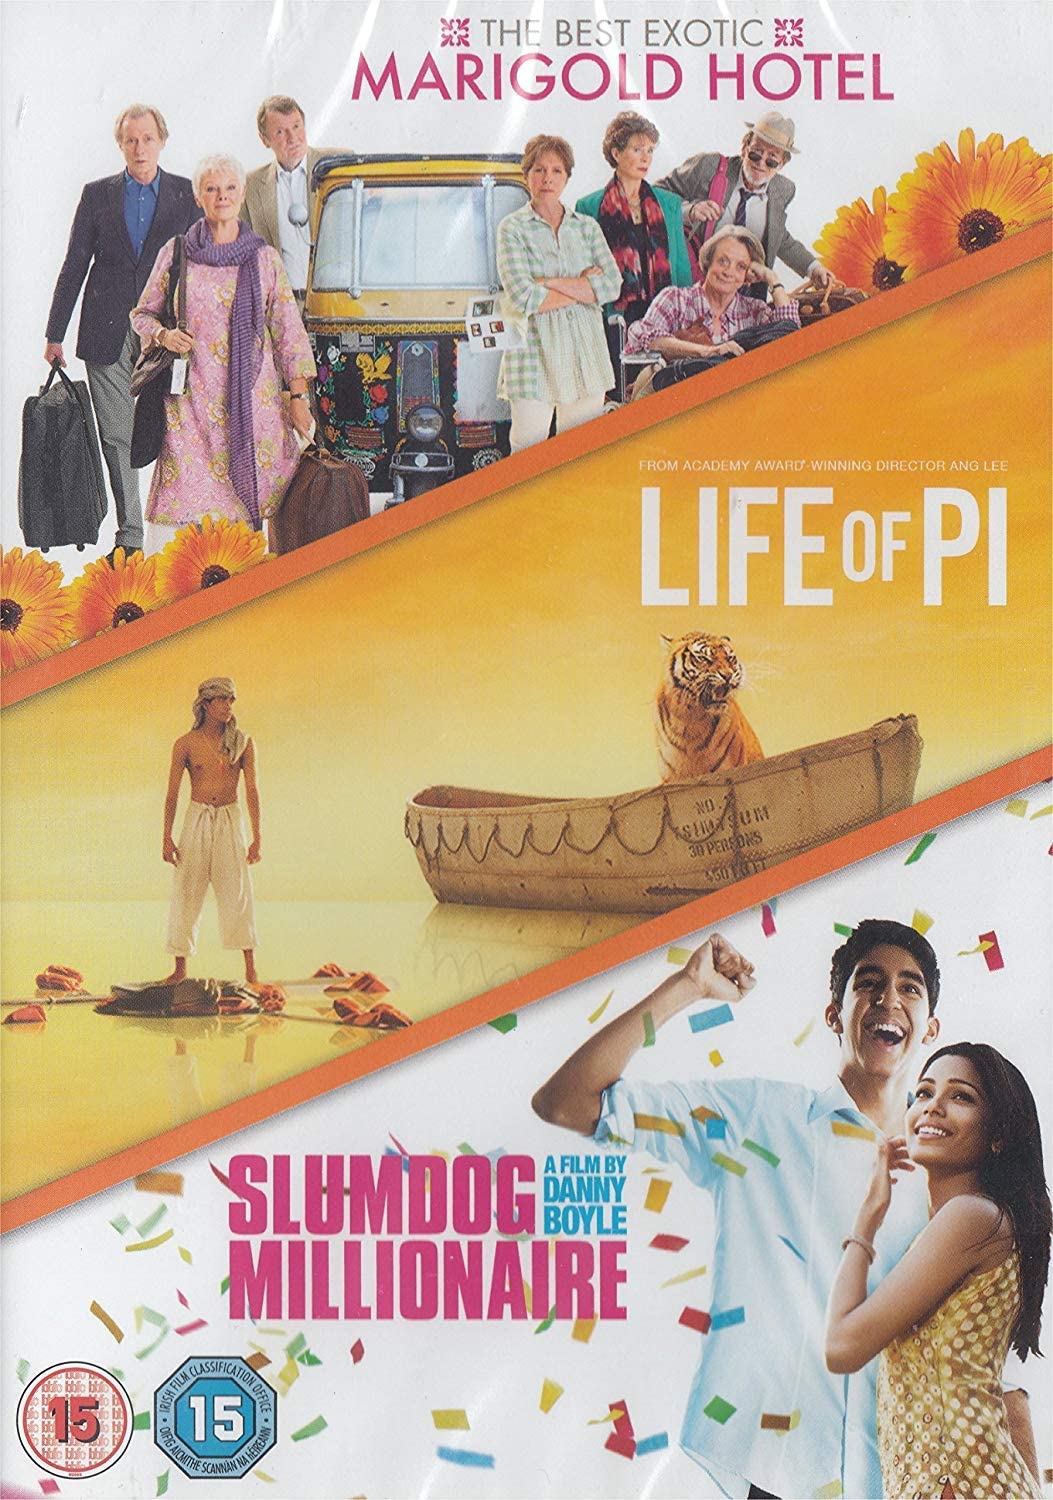 The Best Exotic Marigold Hotel / Life Of Pi / Slumdog Millionaire - Drama [DVD]